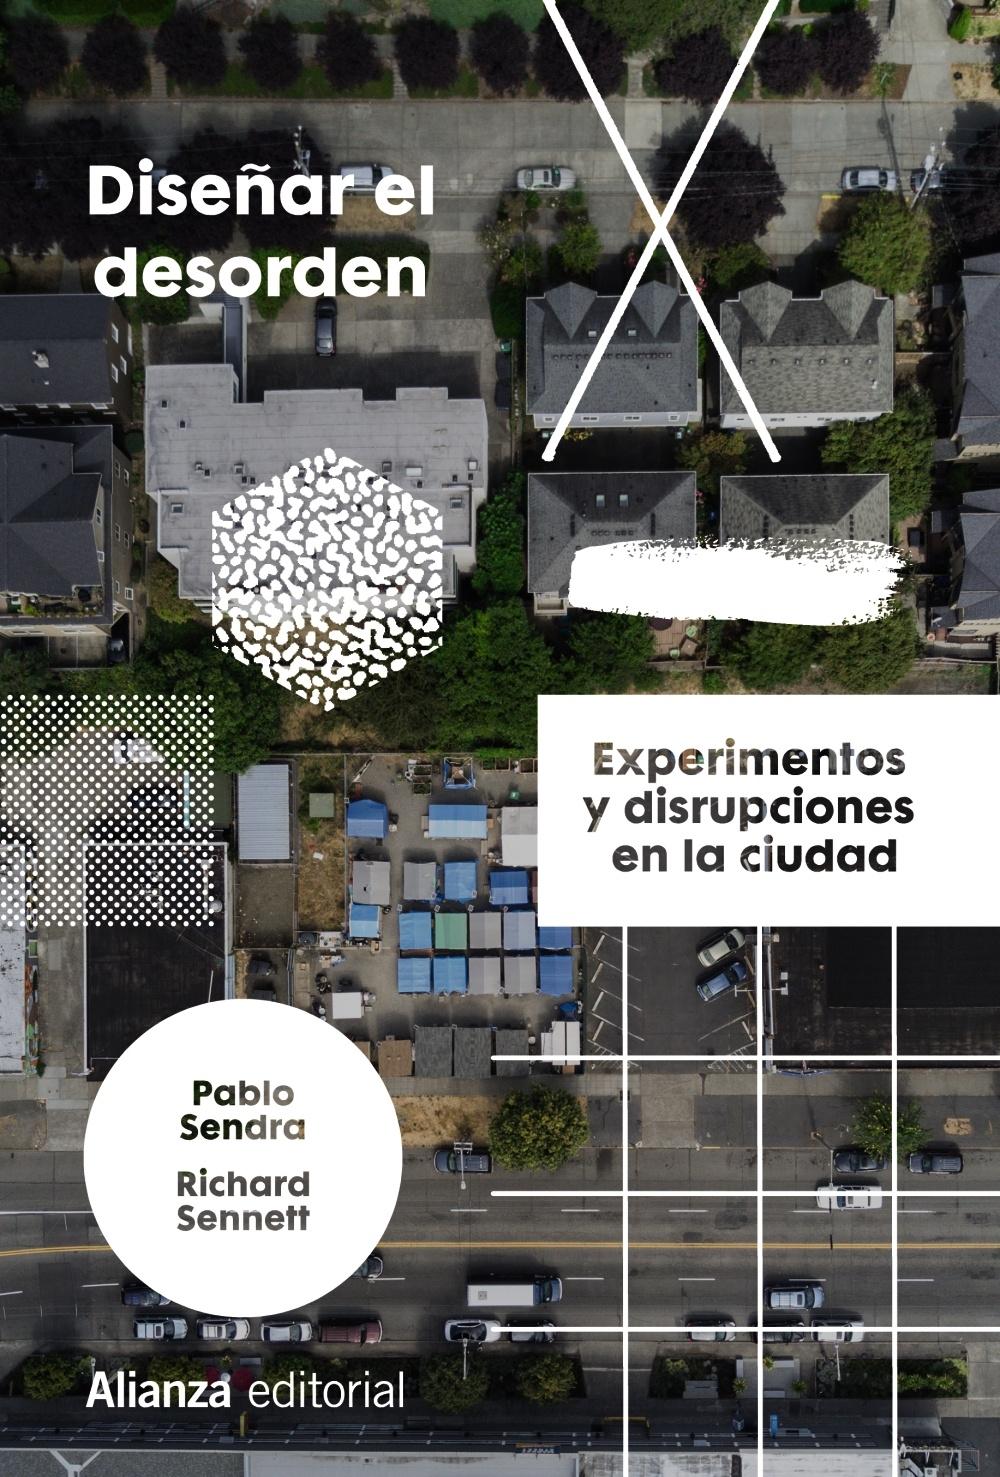 Diseñar el desorden "Experimentos y disrupciones en la ciudad". 